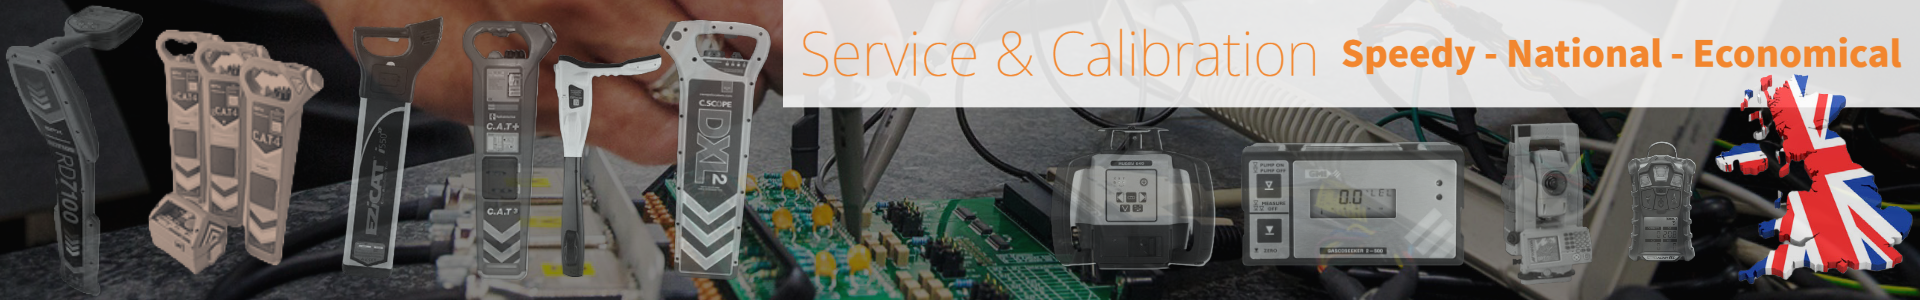 Calibration Services - Cable Locators - Gas Detectors - Survey Equipment - Lasers